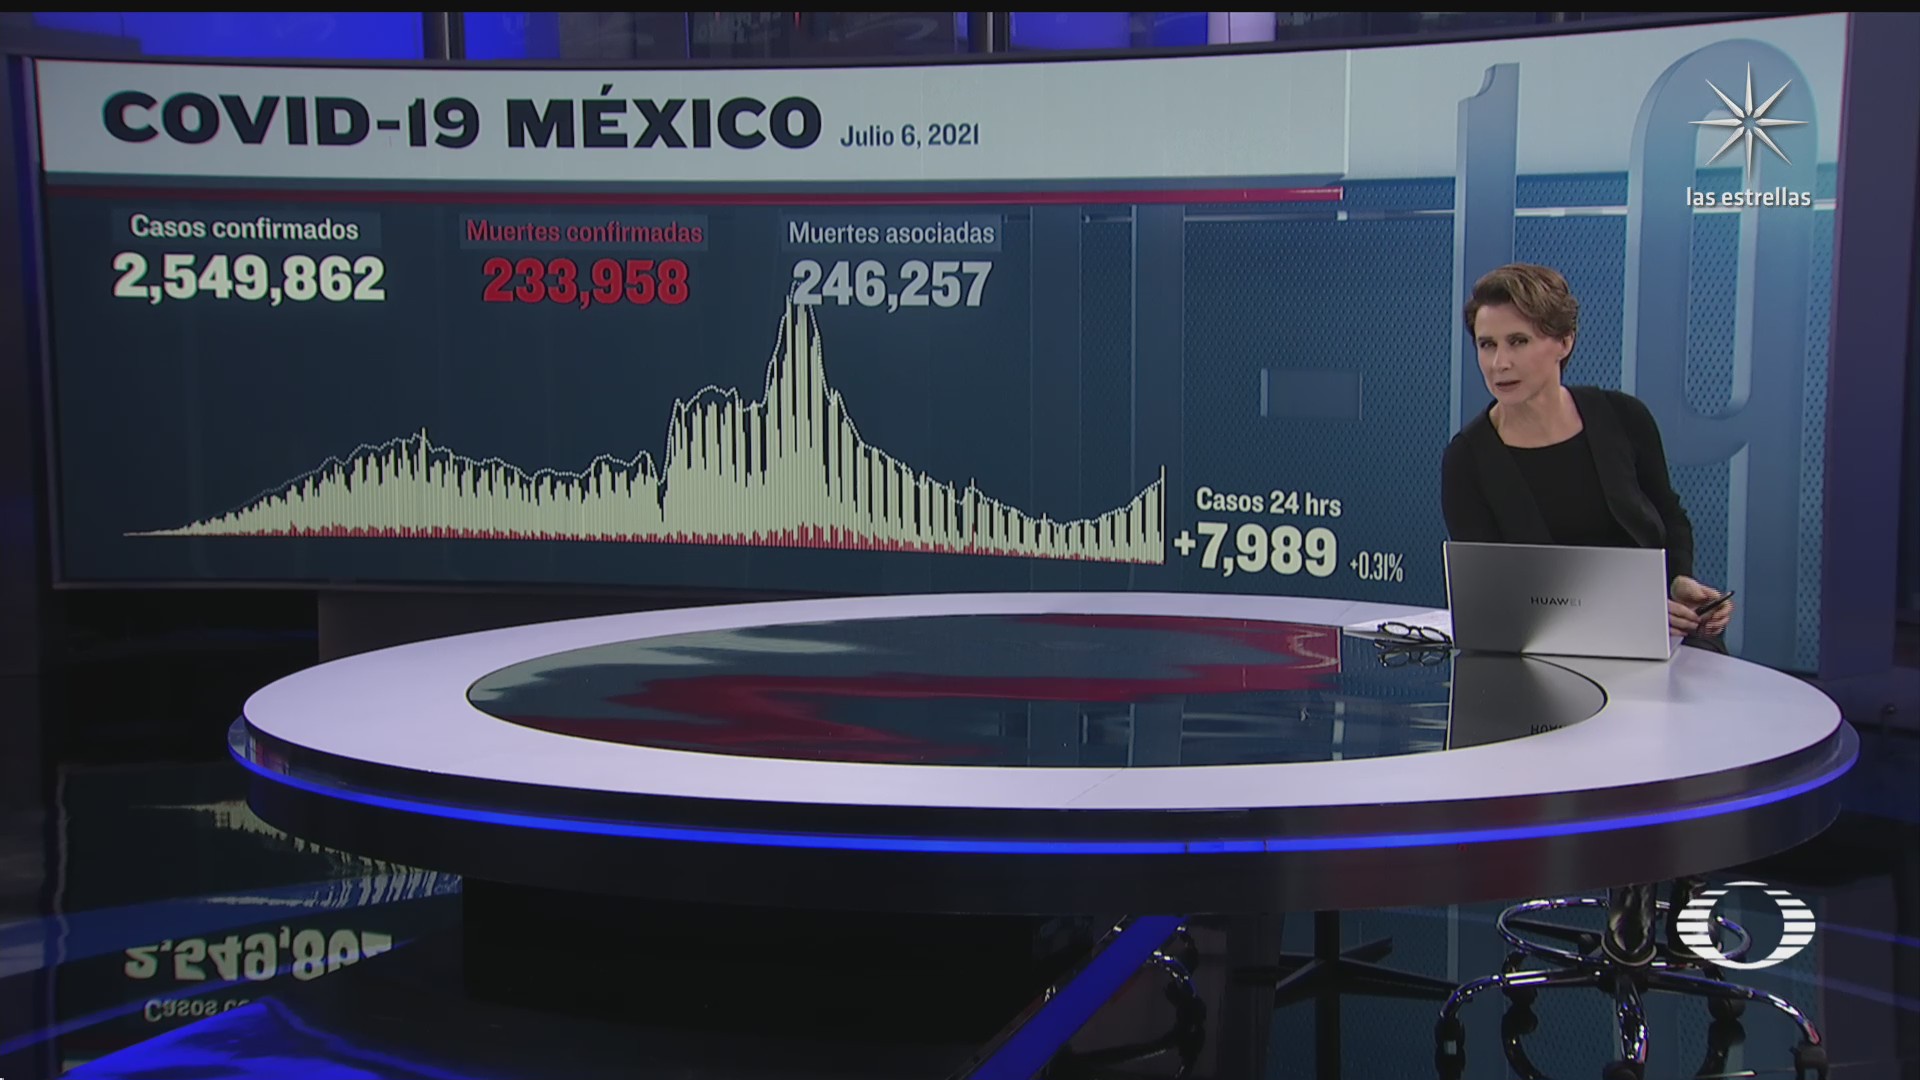 suman 233 mil 958 muertos por covid en mexico